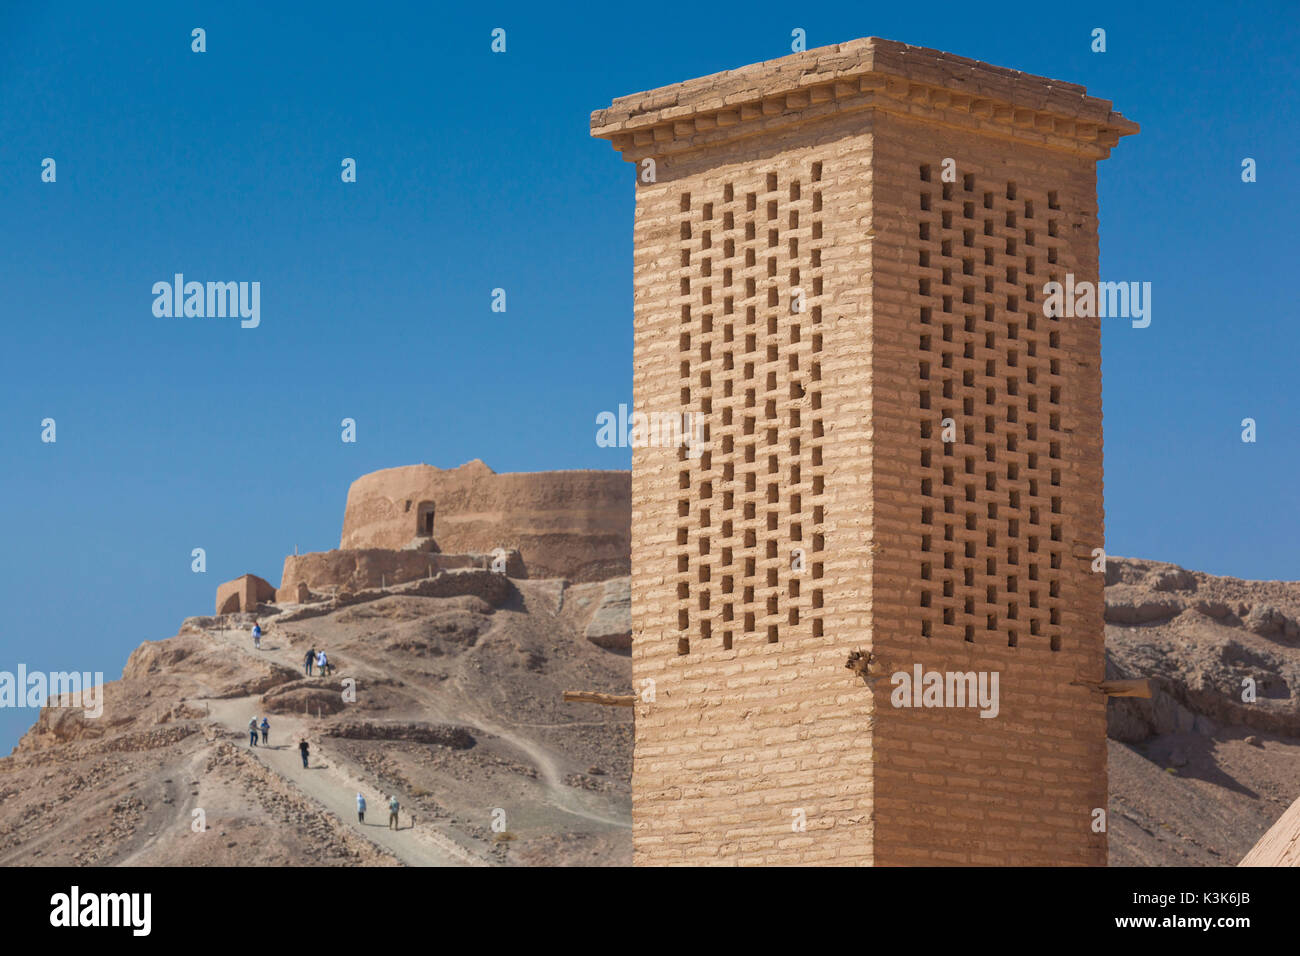 Iran, Central Iran, Yazd, torri zoroastriana di silenzio complesso sepolcrale, esterna Foto Stock